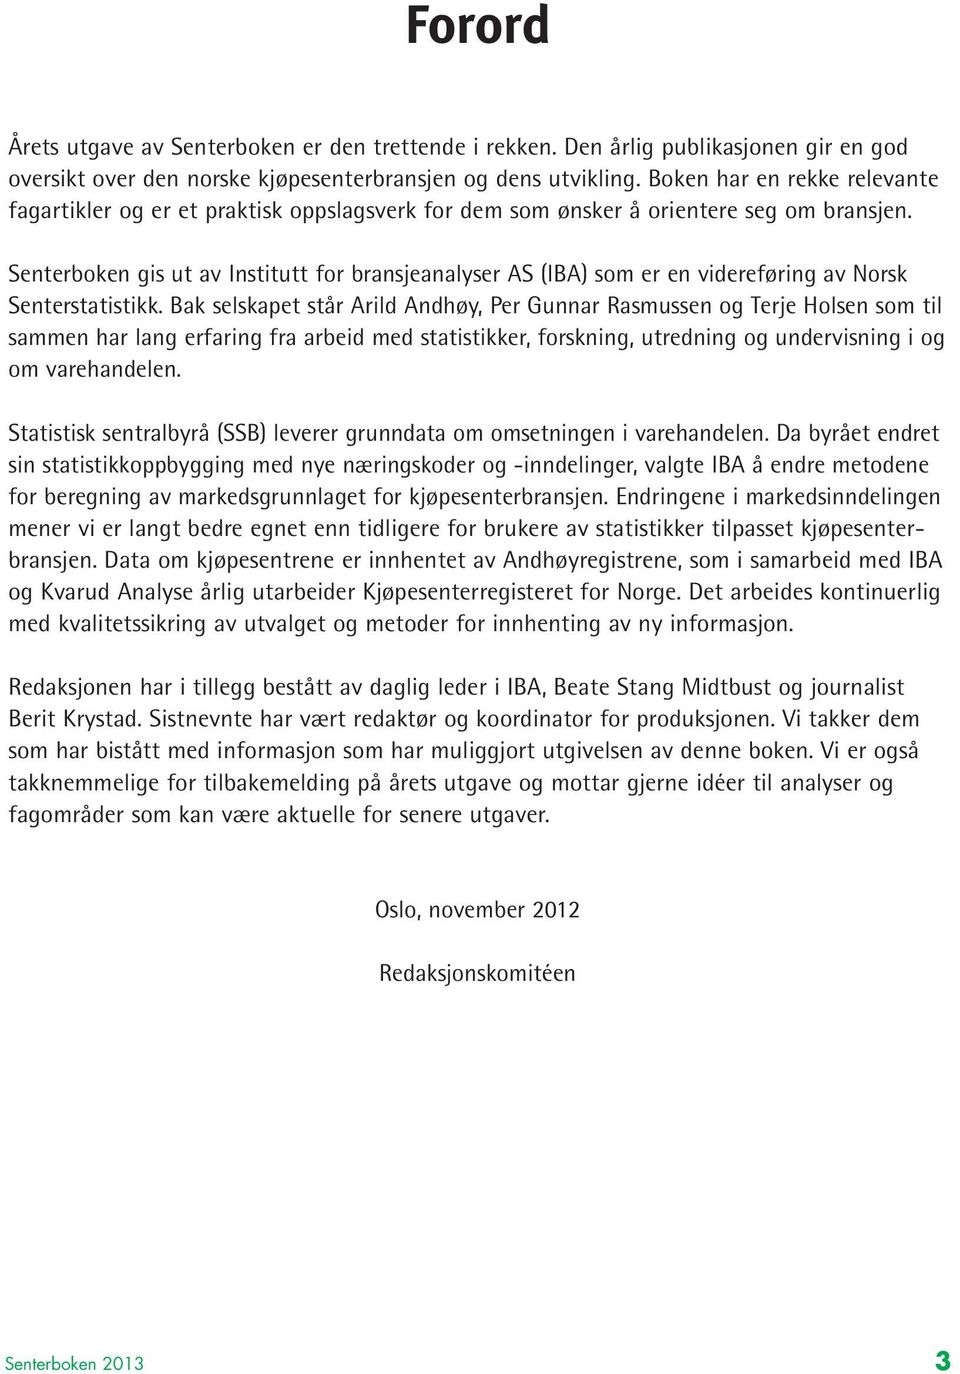 Senterboken gis ut av Institutt for bransjeanalyser AS (IBA) som er en videreføring av Norsk Senterstatistikk.